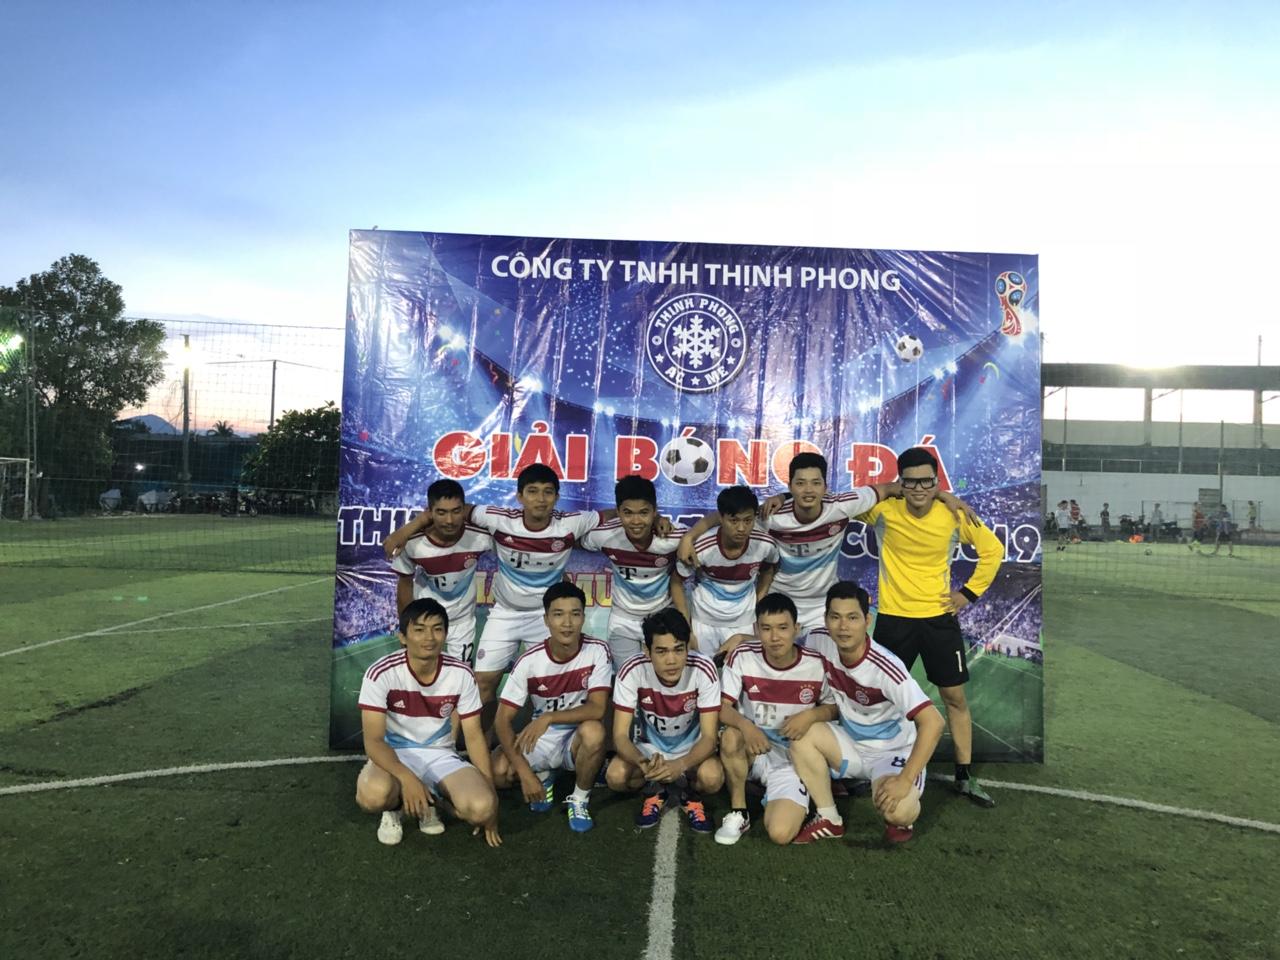 Thịnh Phong League Cup 2019 - Kỷ niệm 30/4 - 1/5